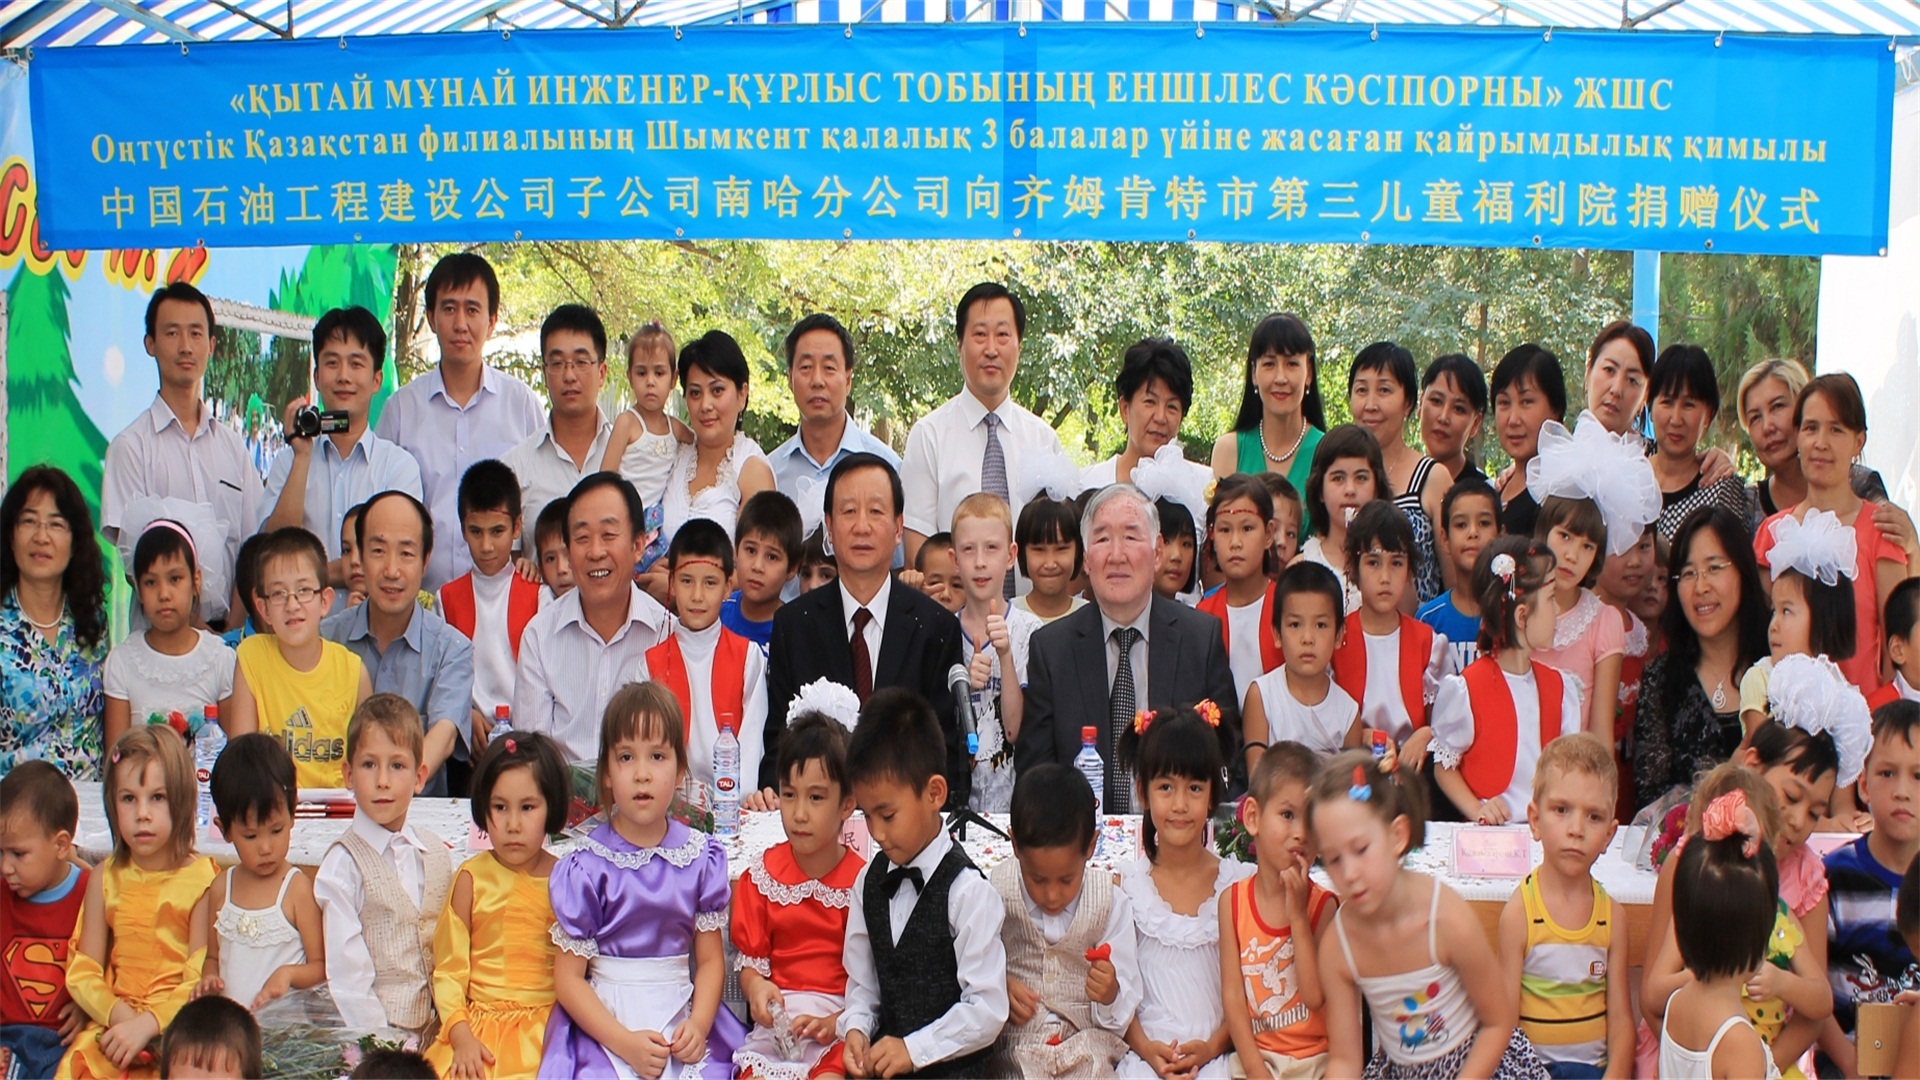 【社會責任】                     圖片背景：哈薩克斯坦項目，中國石油人援建的一個兒童福利院。捐贈儀式上，中國石油人與福利院的孩子們在一起。                            隱藏文字說明